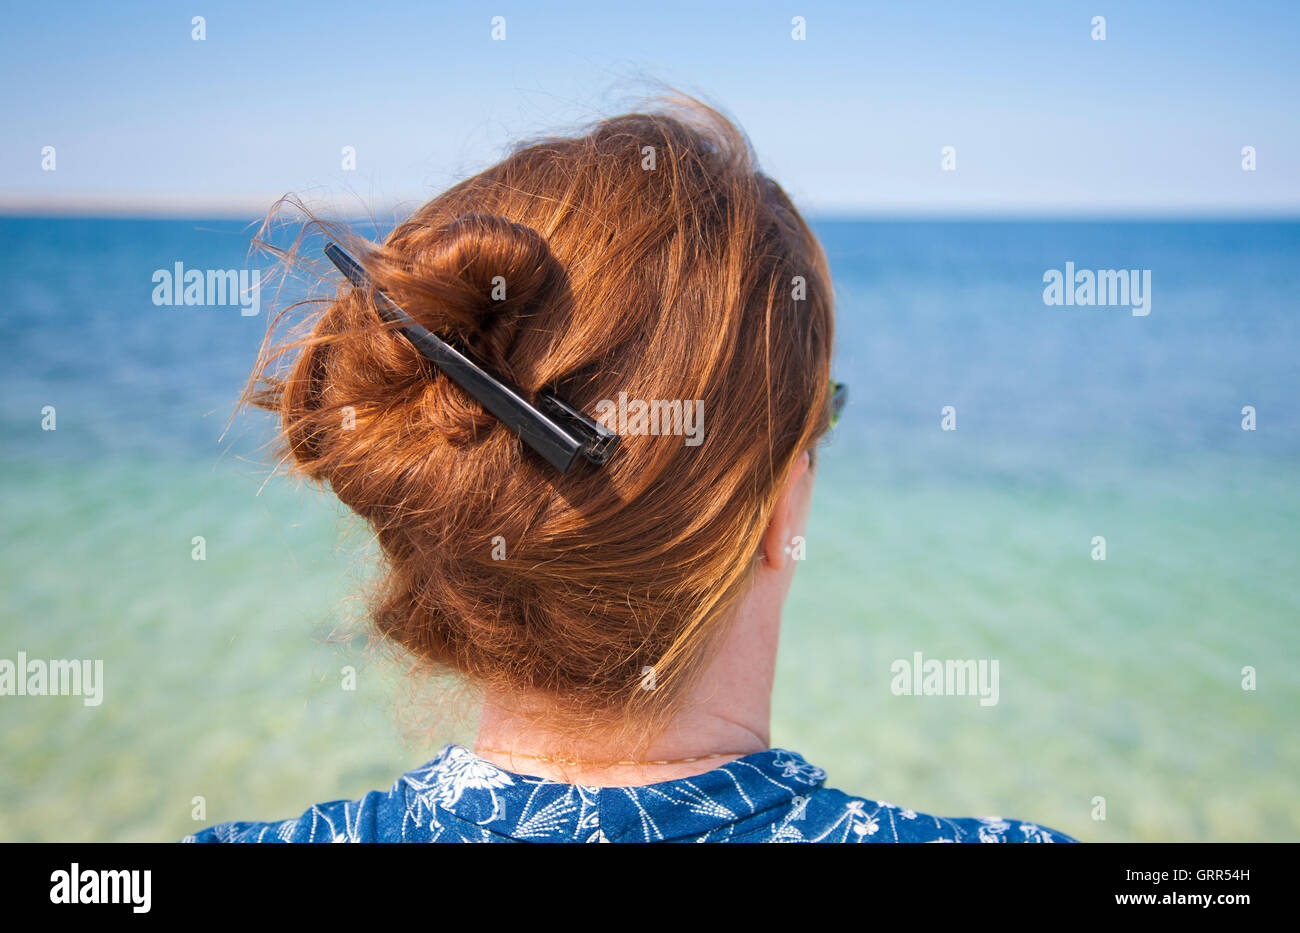 Mujer con pelo largo y vistiendo su pelo en un nudo contemplando el mar Foto de stock